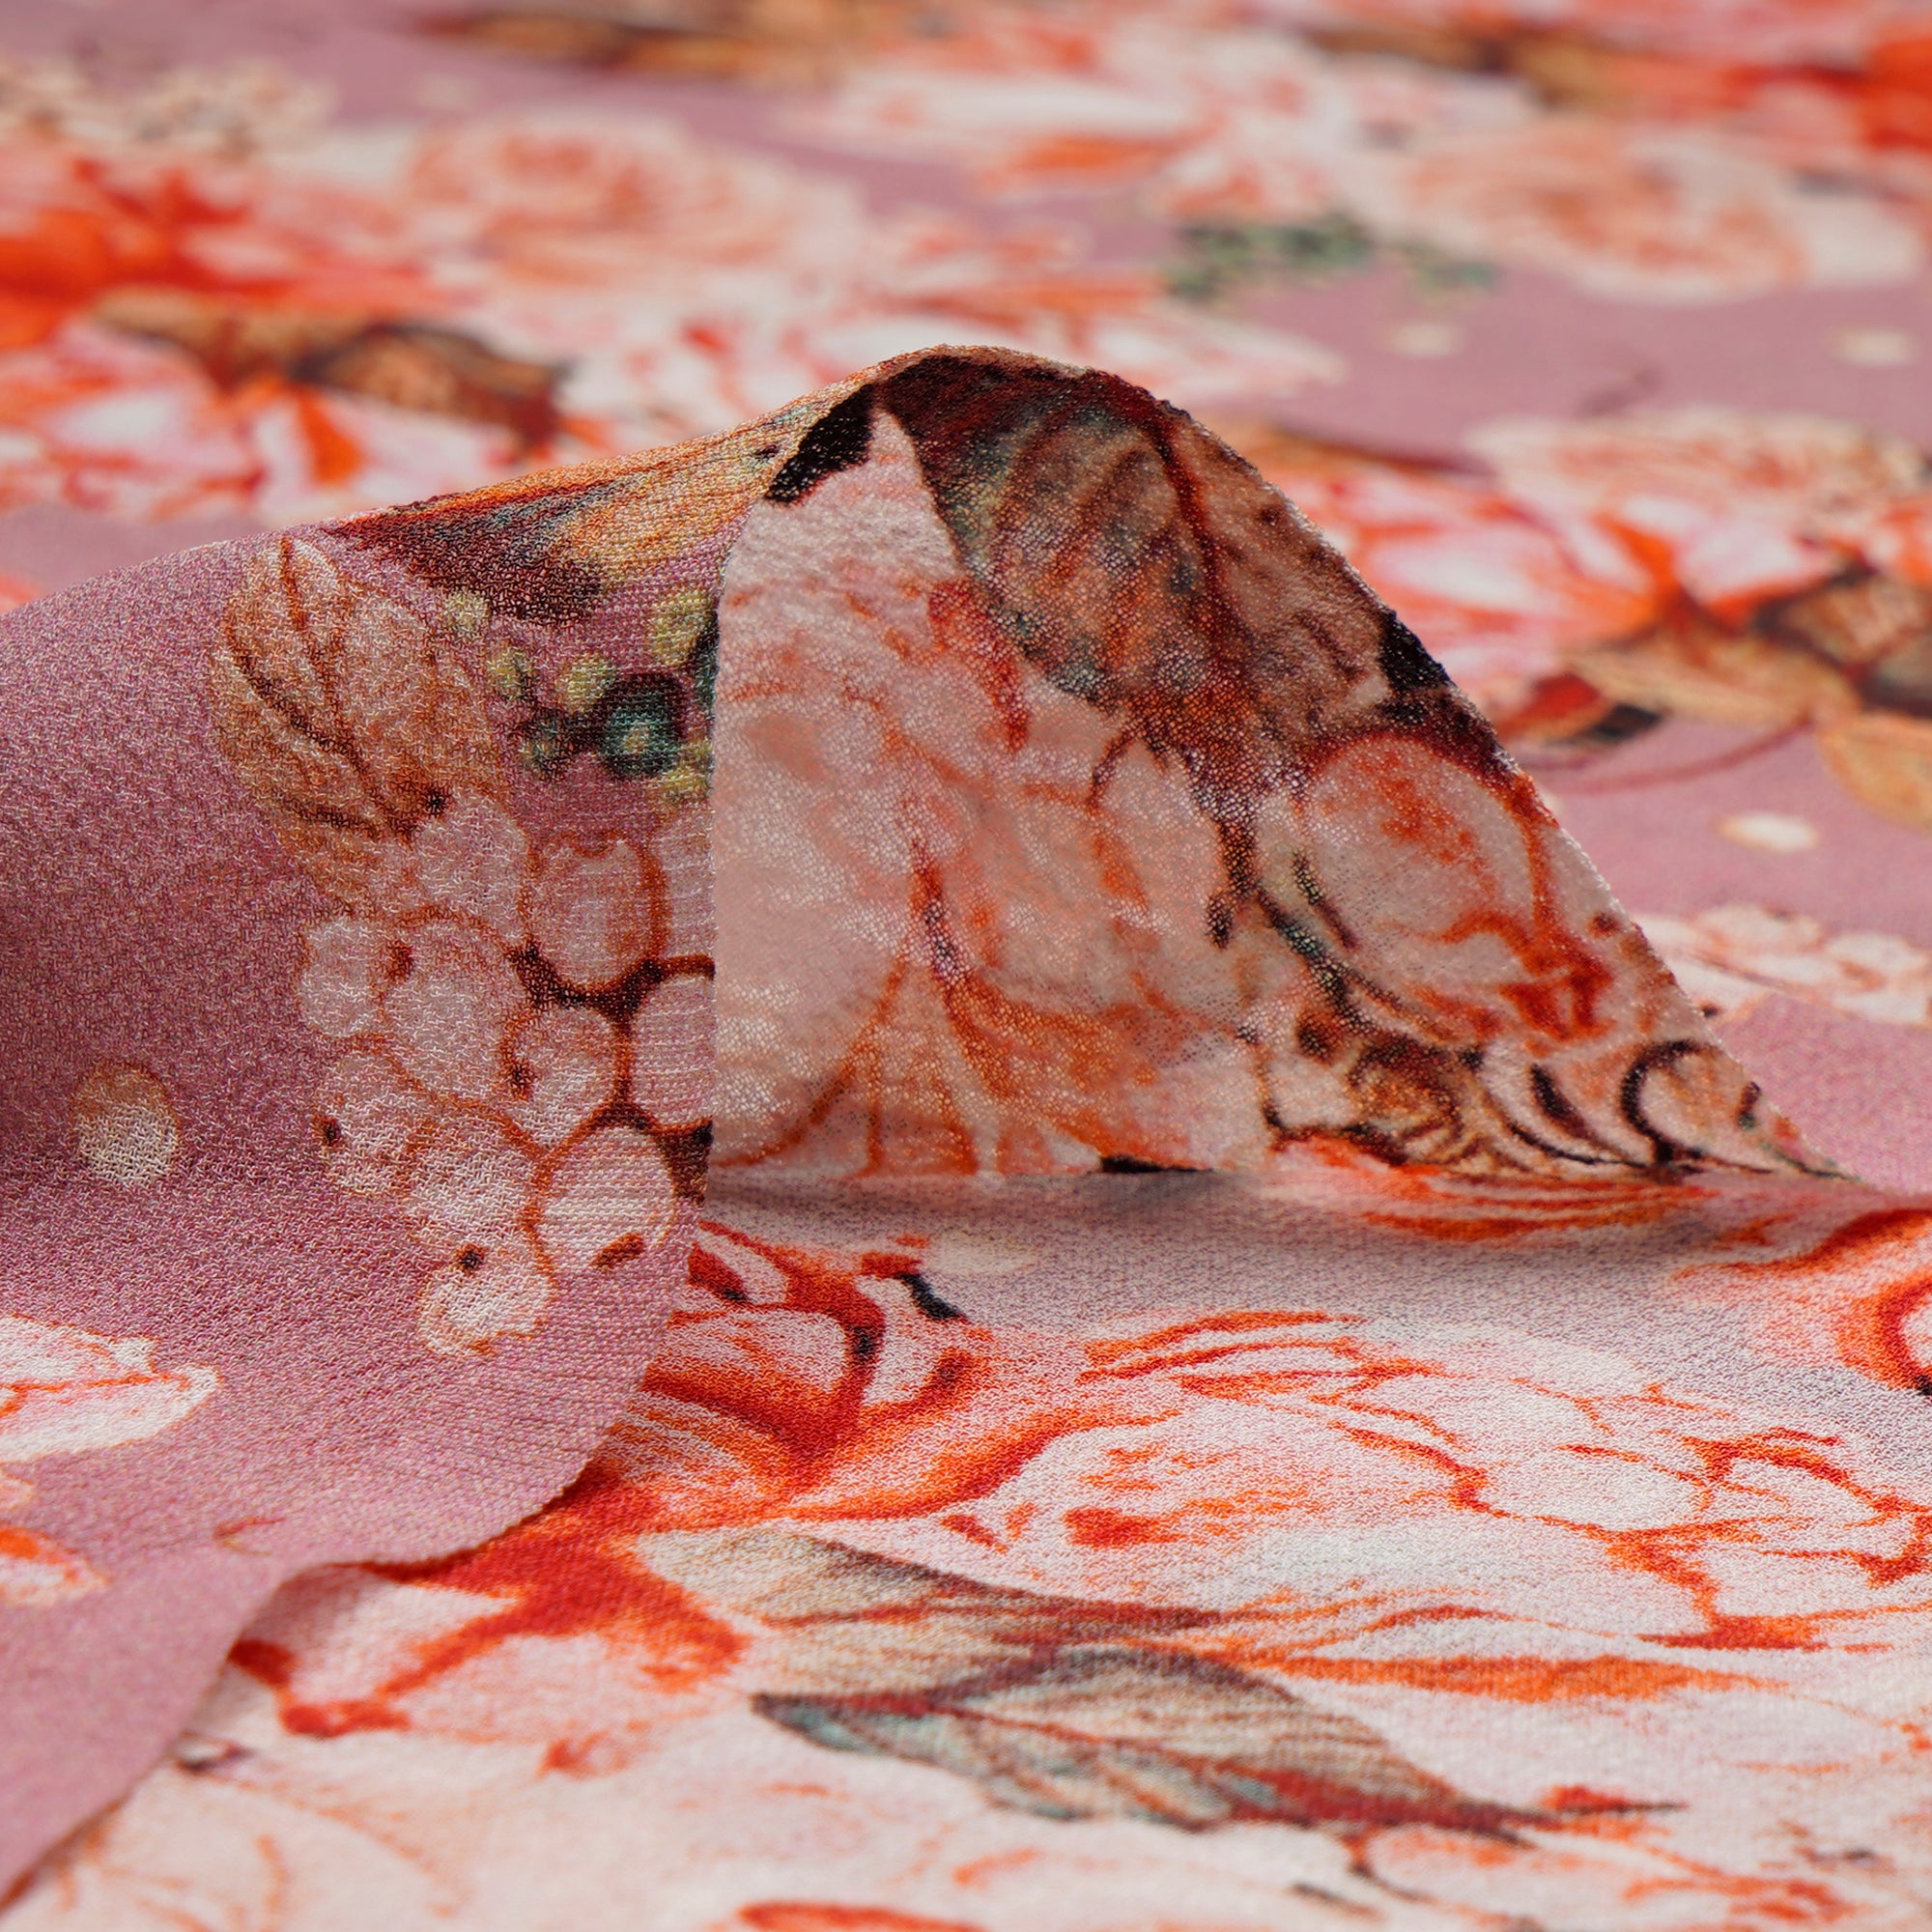 Baby PInk Floral Pattern Digital Printed Silk Georgette Fabric